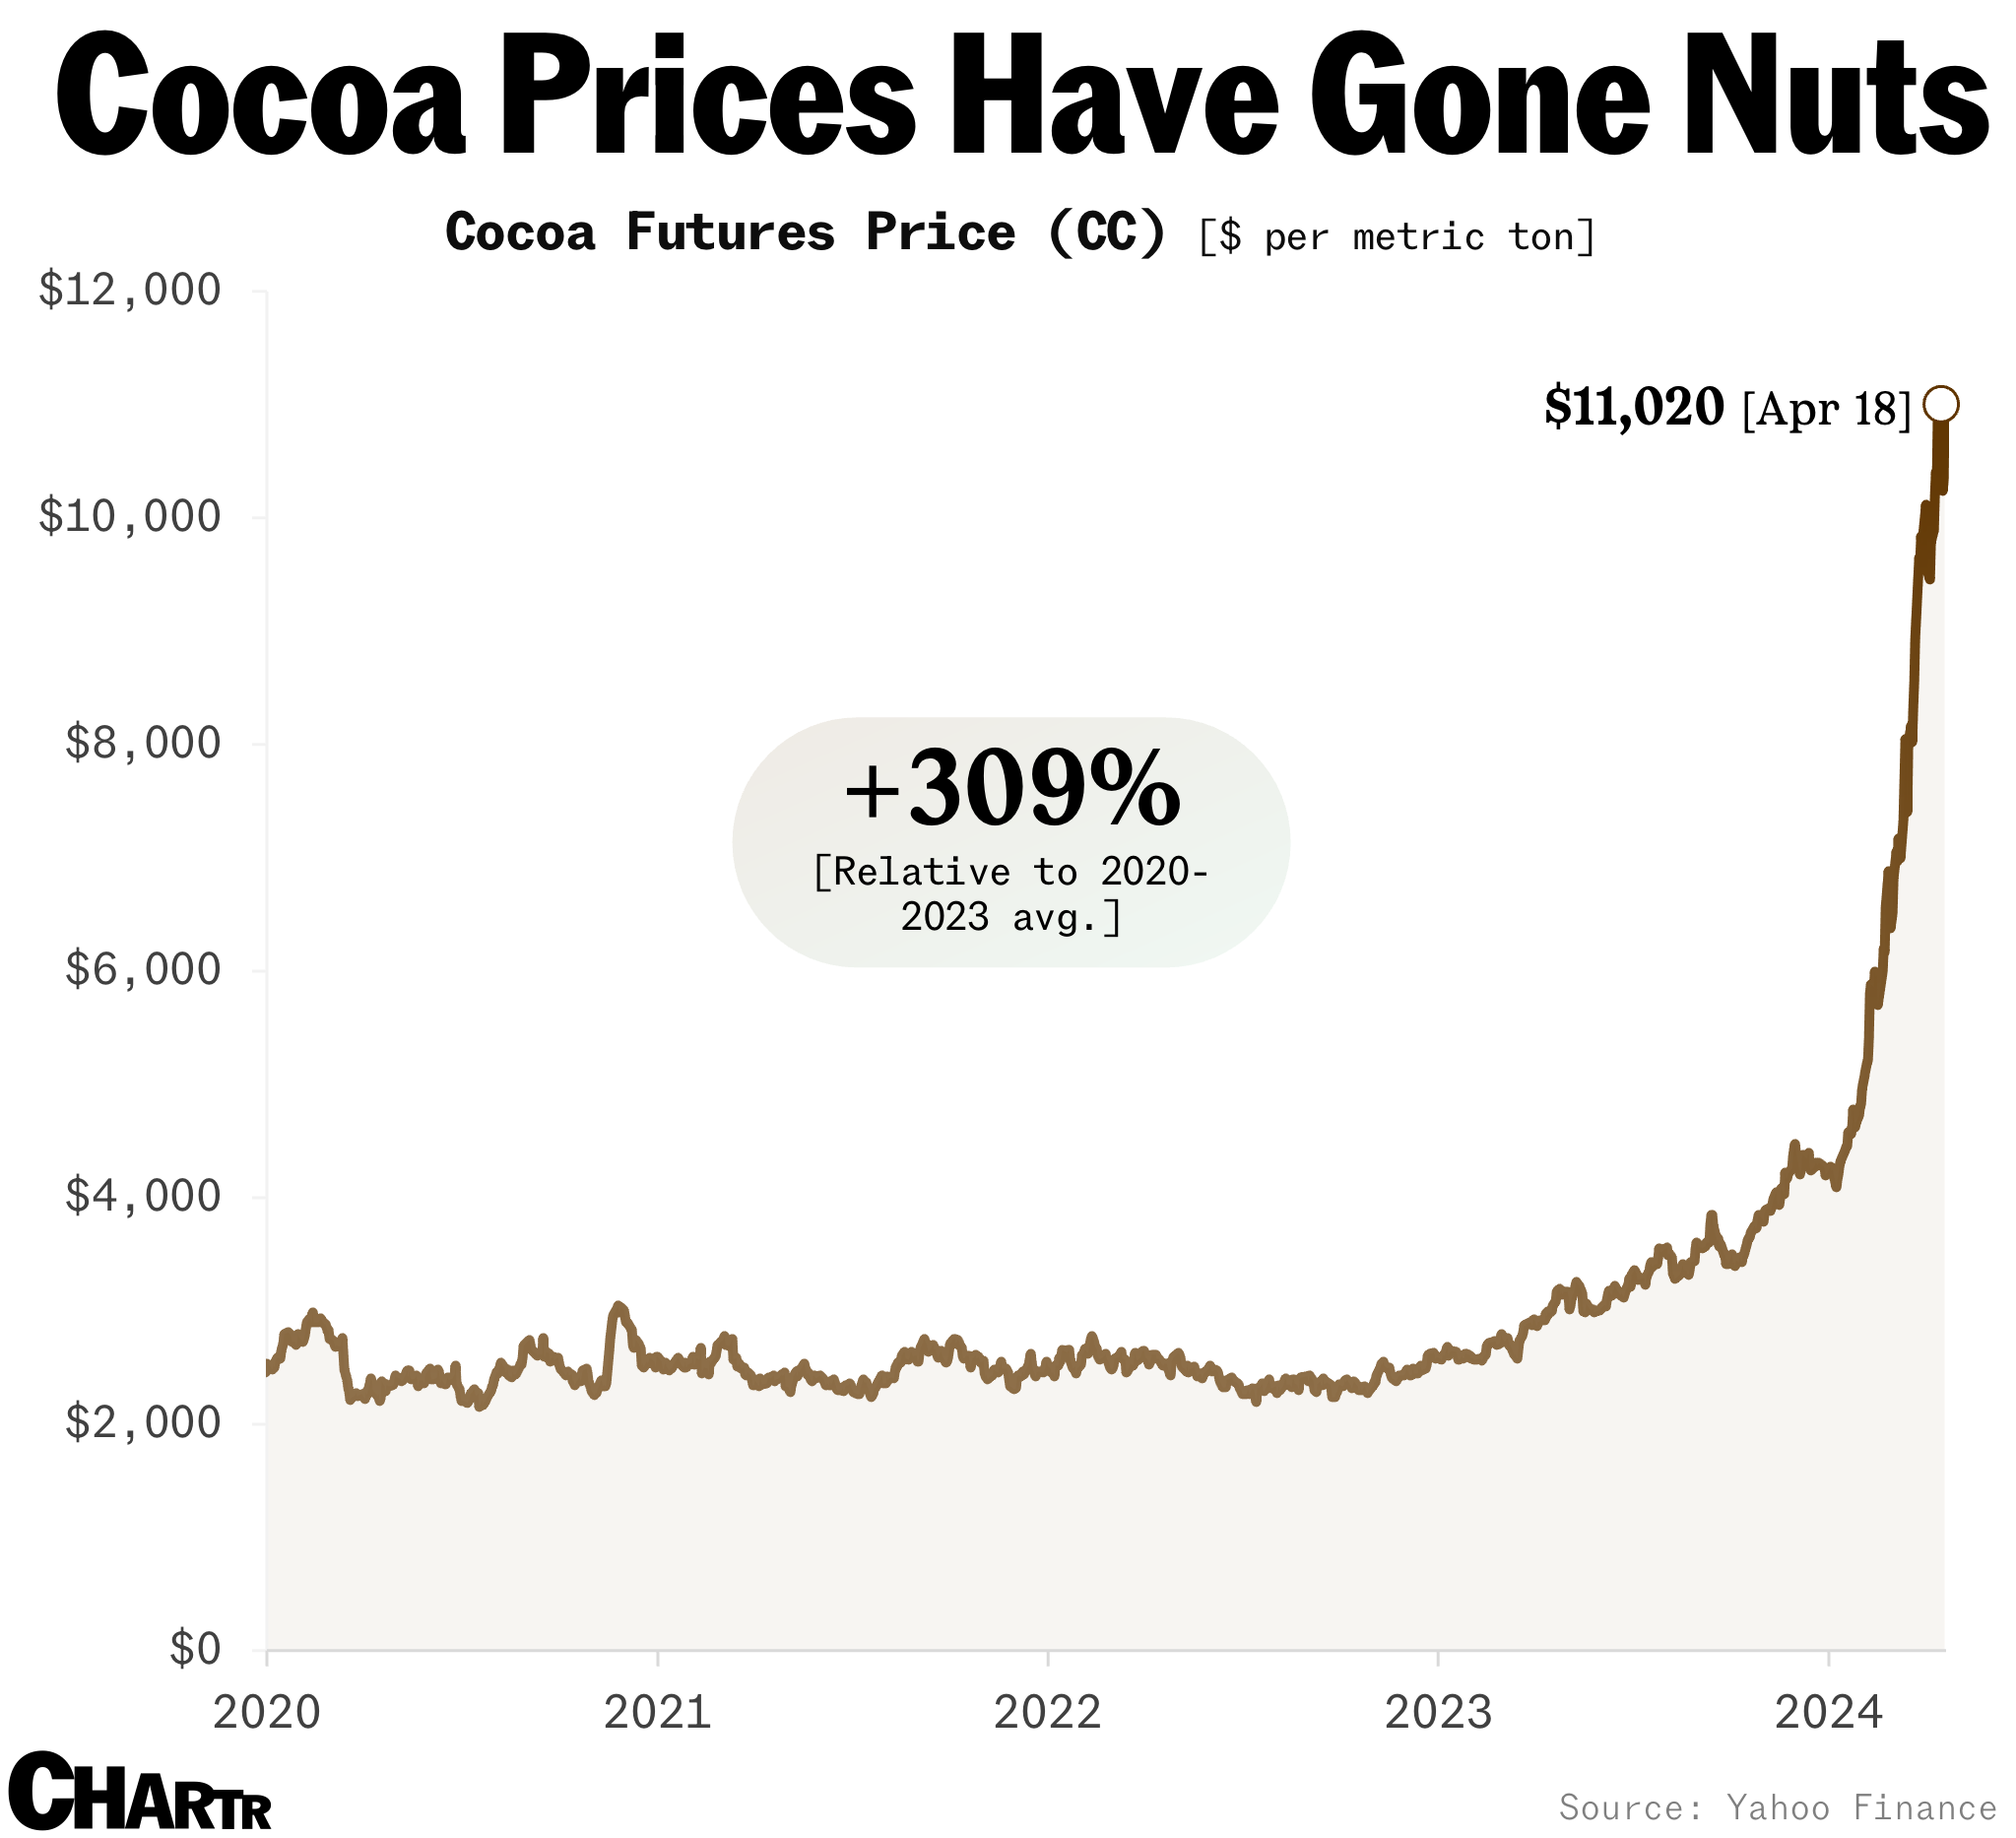 Cocoa prices